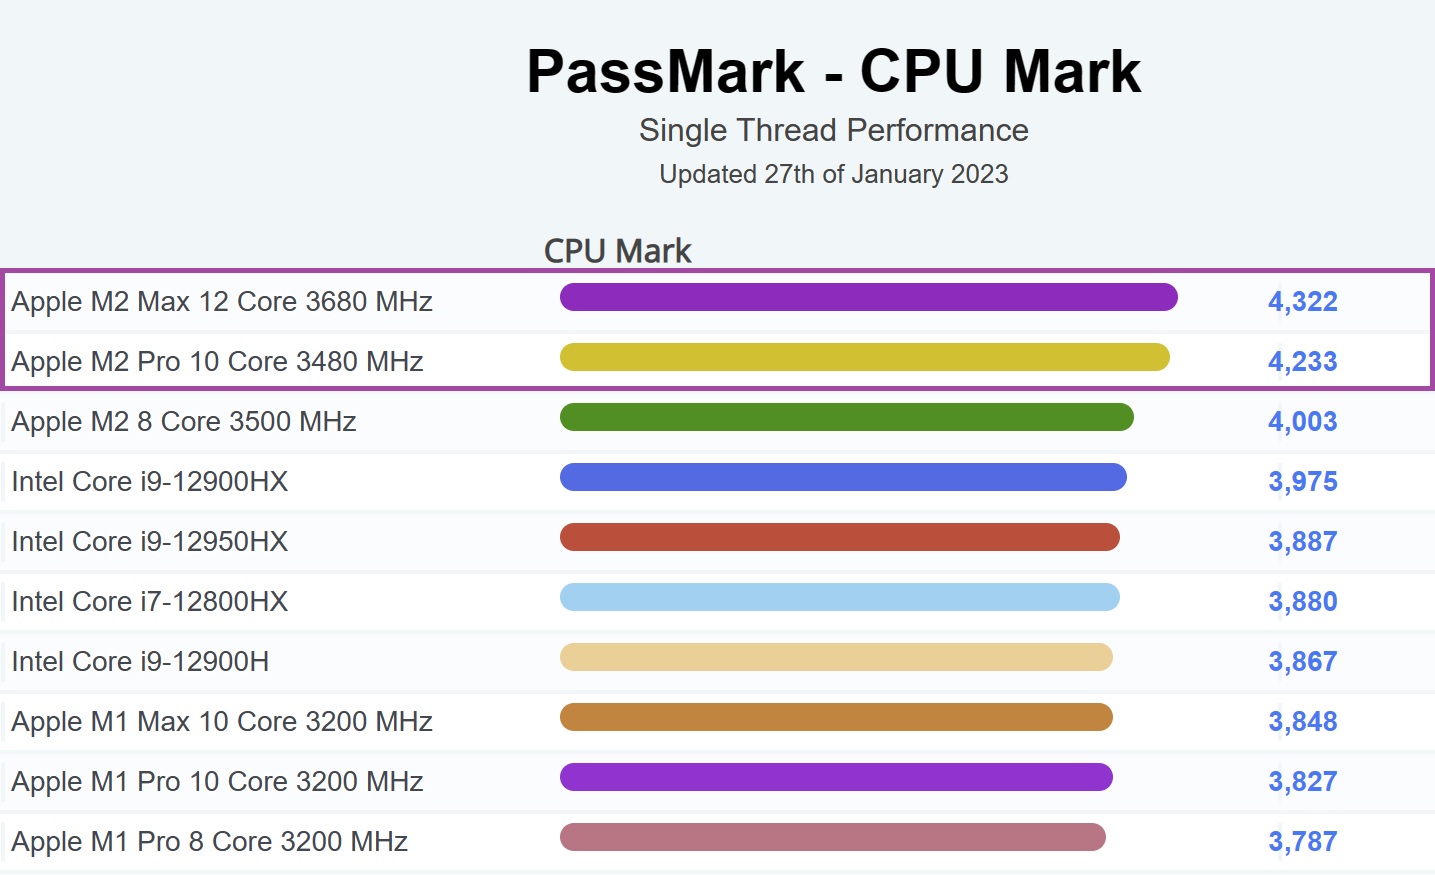 蘋果 M2 Pro/Max 晶片稱霸 PassMark 性能排行榜 | M2 Max, M2 Pro, MacBook Pro, PassMark, 蘋果電腦 | iPhone News 愛瘋了